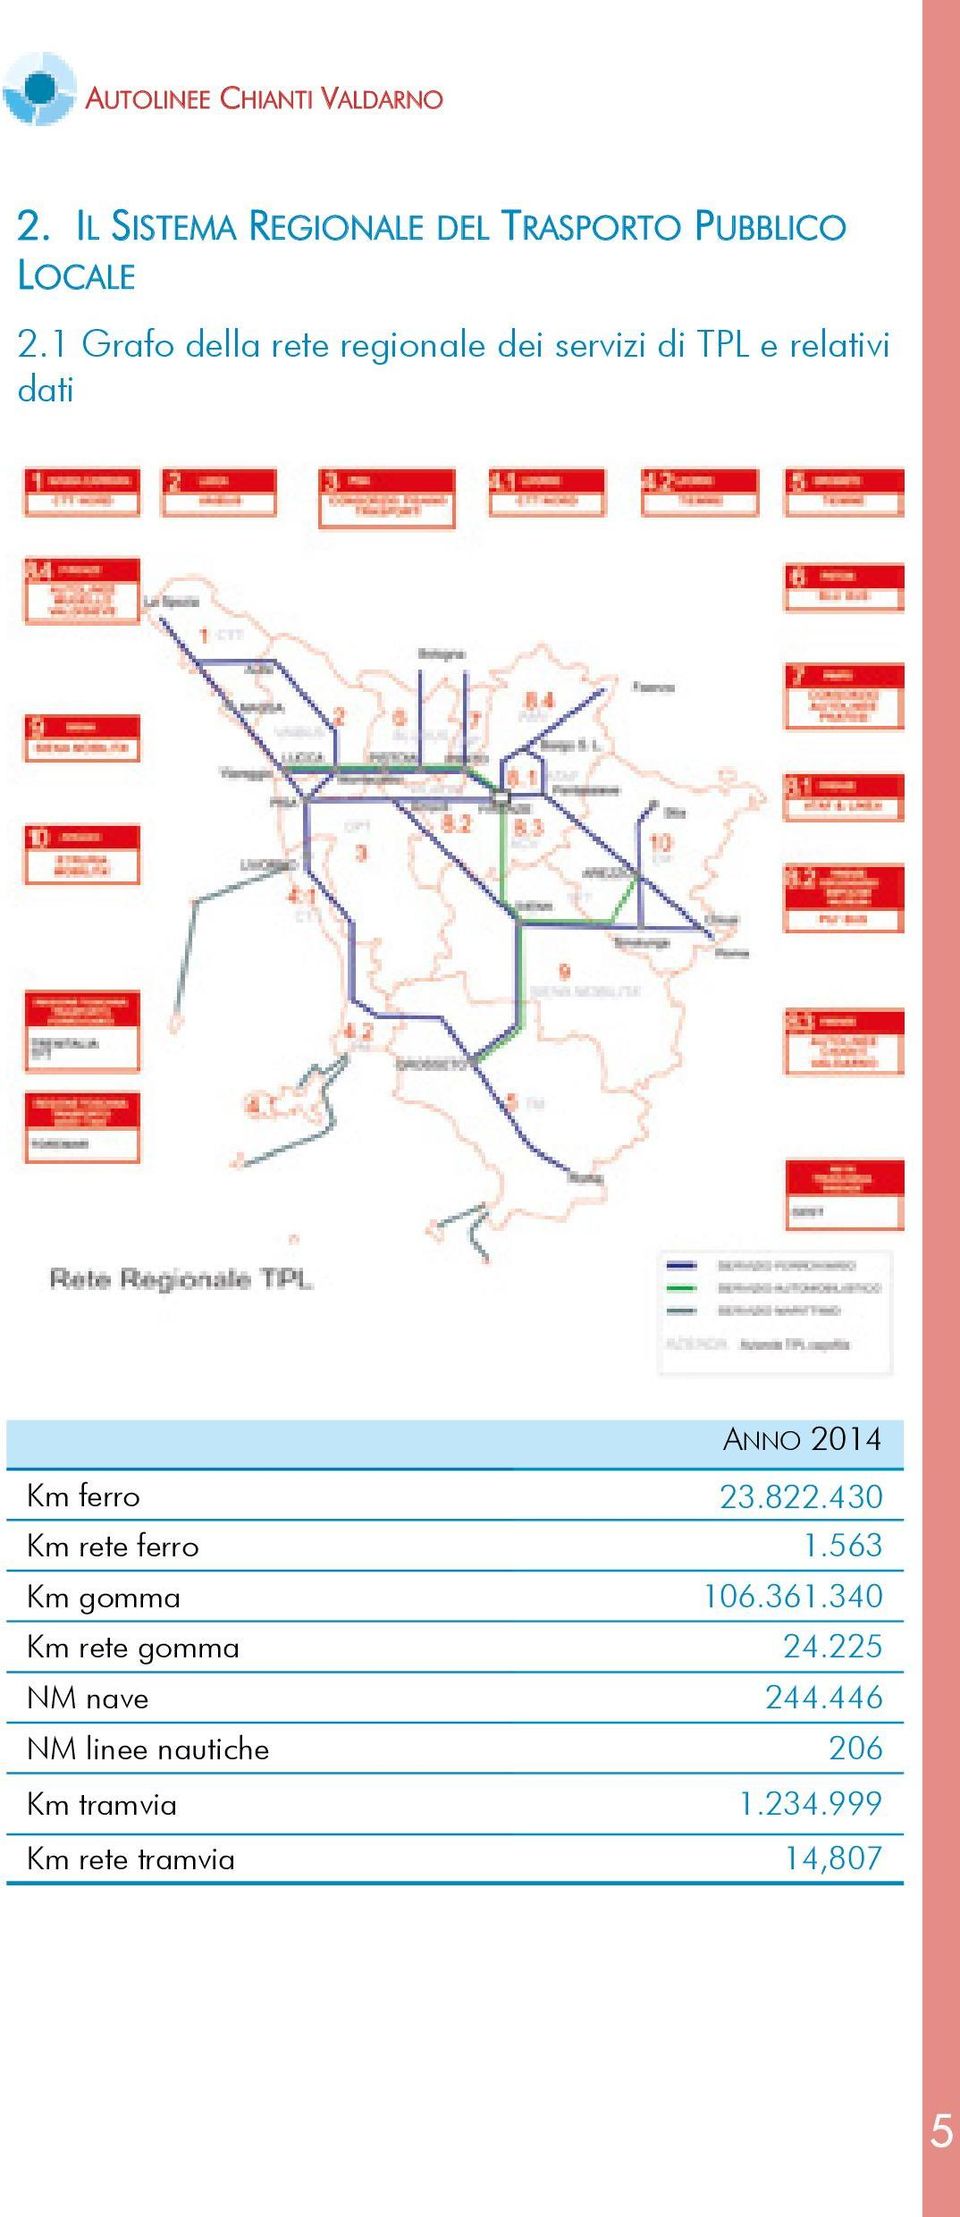 1 Grafo della rete regionale dei servizi di TPL e relativi dati ANNO 2014 Km